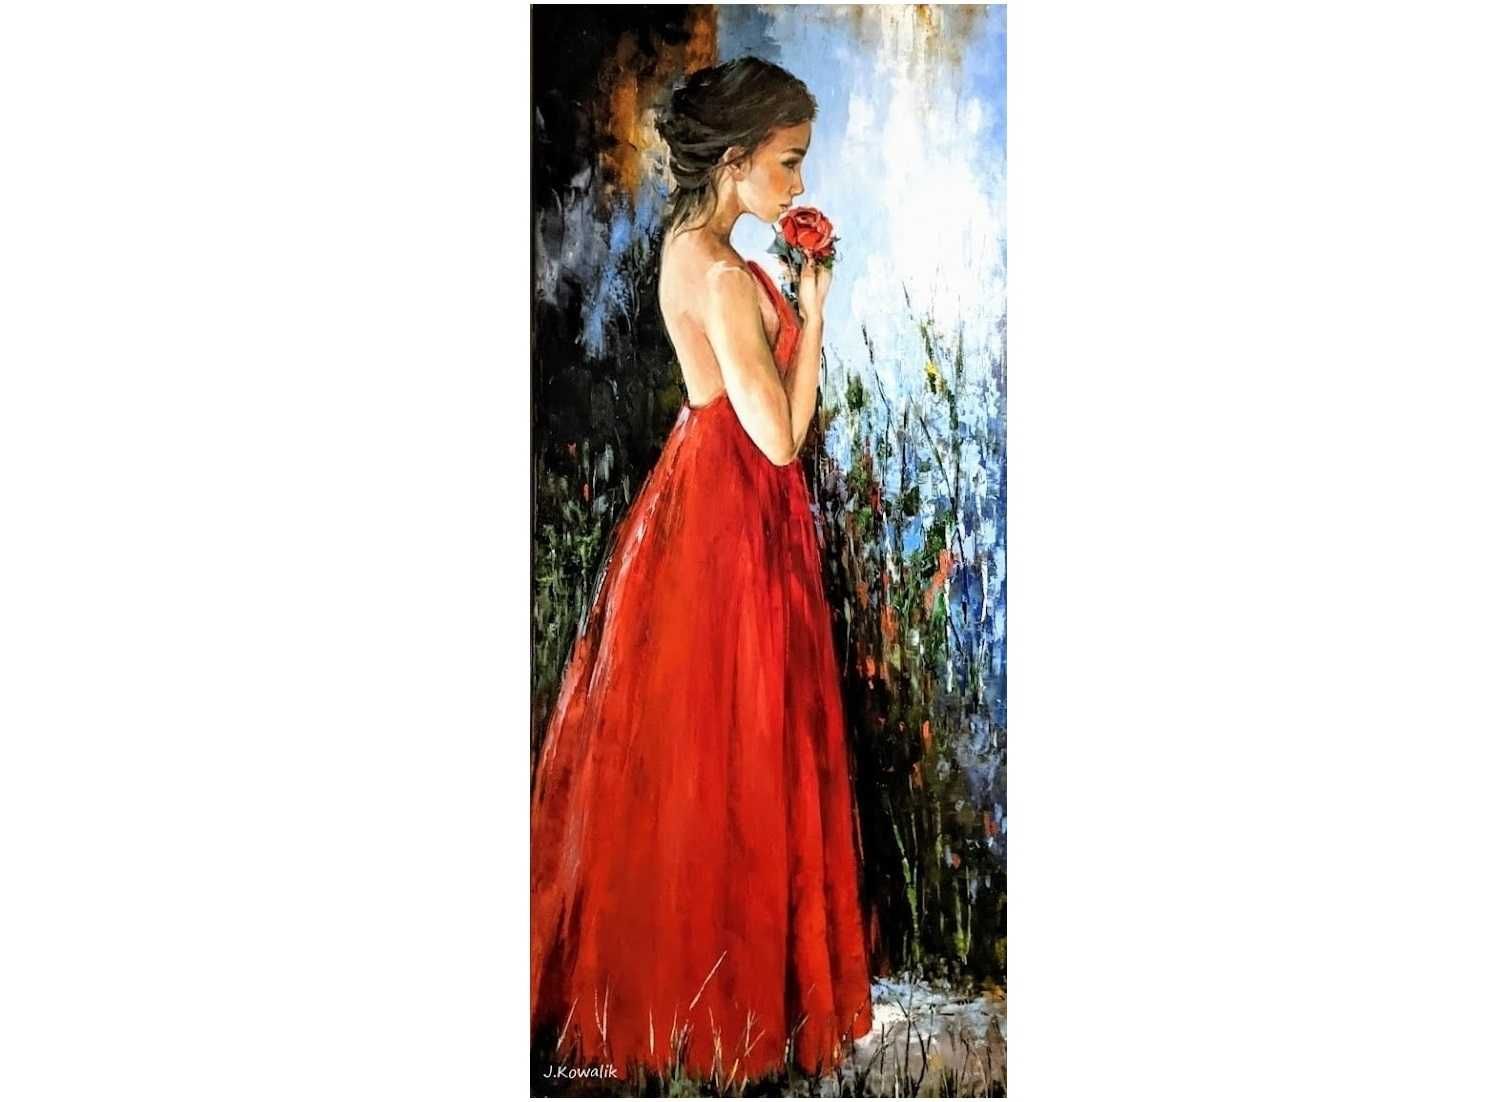 Kowalik - Czerwona róża dziewczyna kobieta akt  obraz olejny 60x120cm